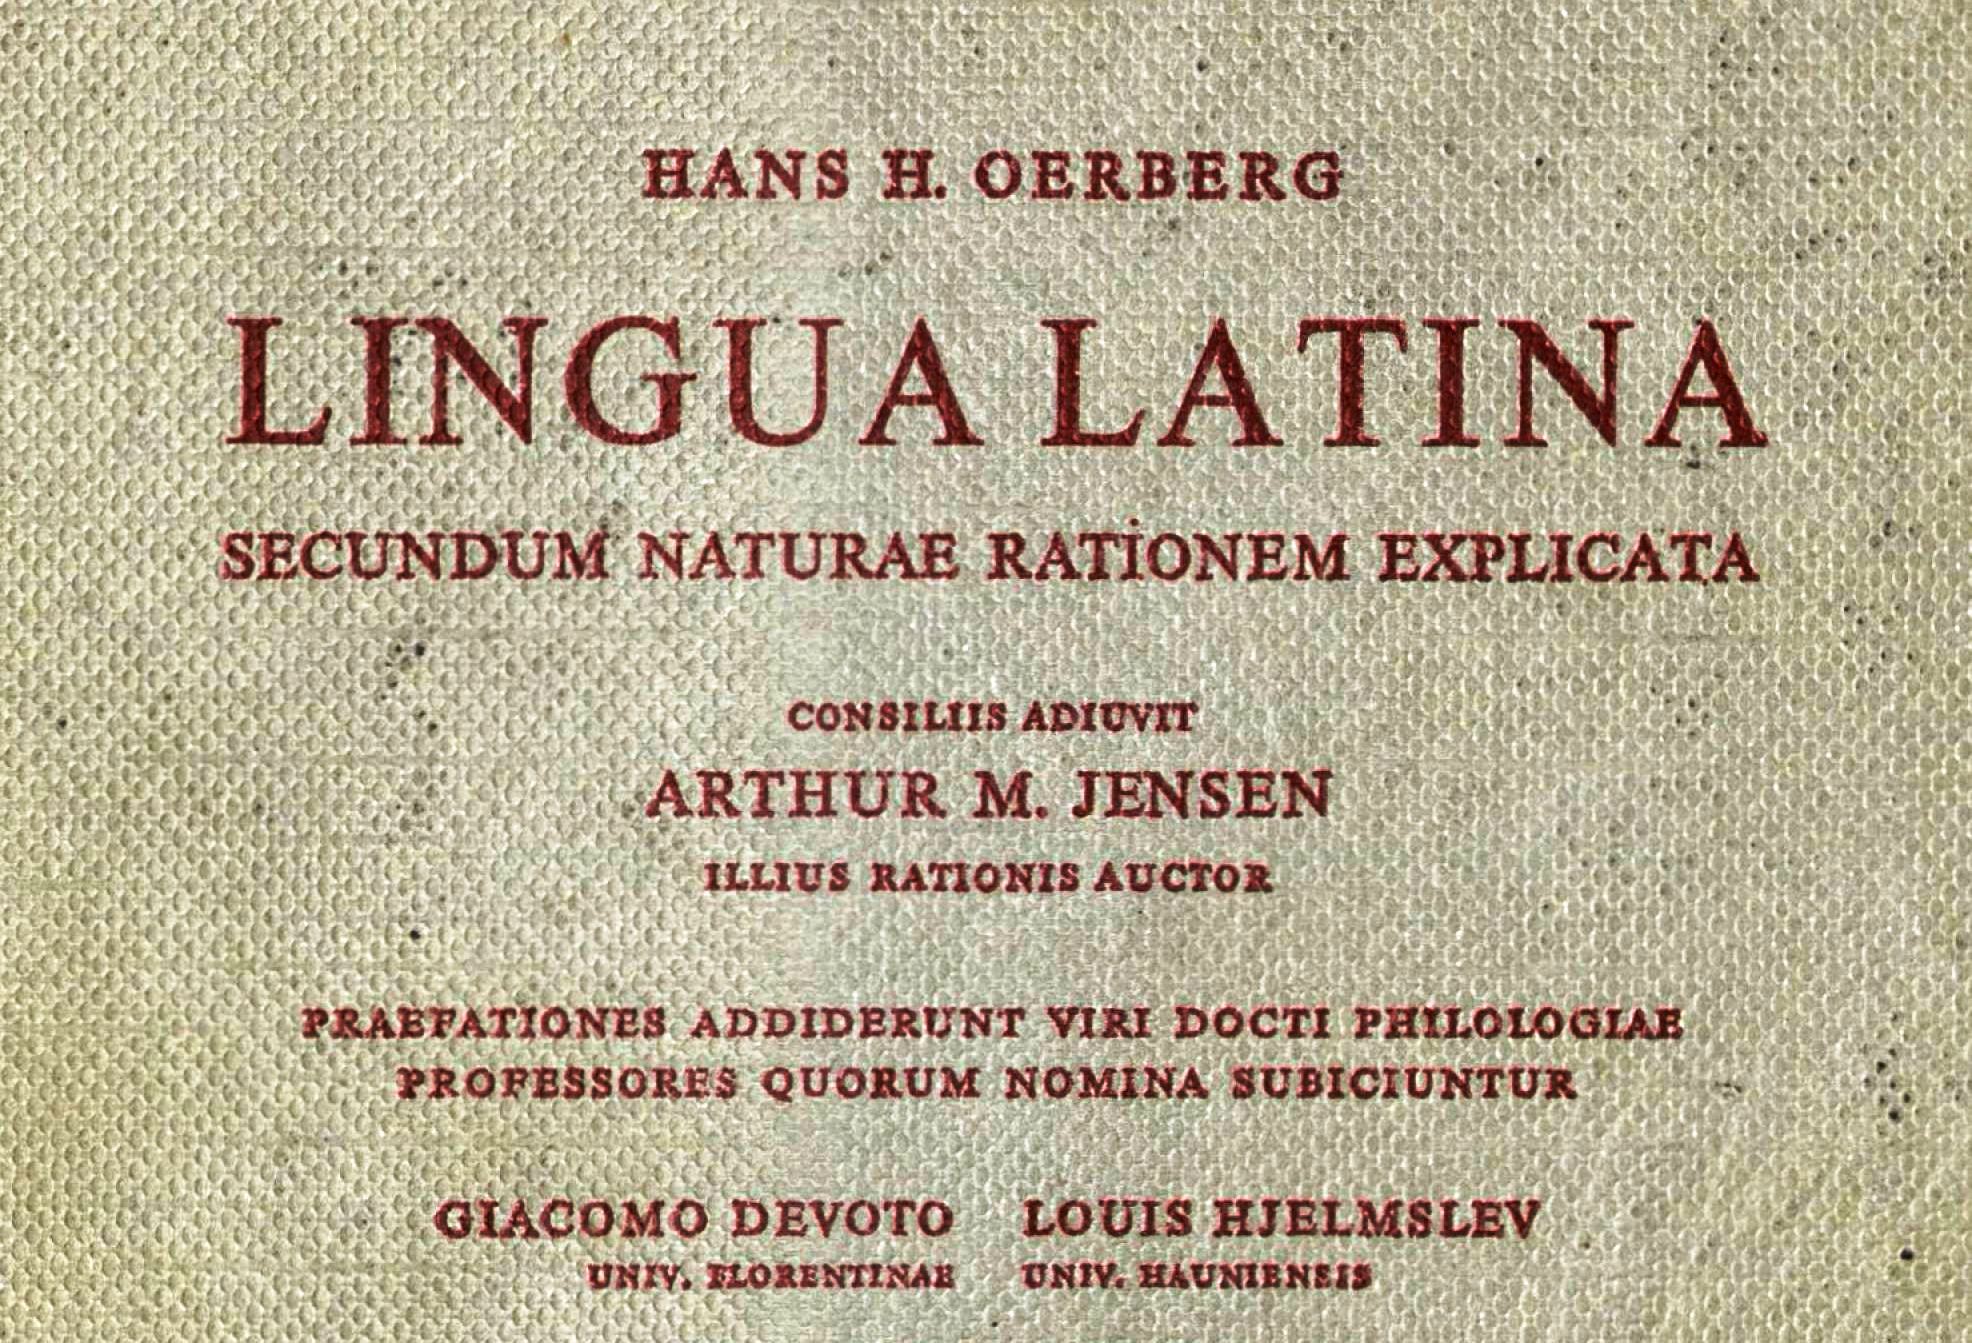 La lista de colaboradores es impresionante, y más amplia. El título primitivo se conservó hasta 1990, cuando el autor revisó la obra, en adelante Lingua Latina per se illustrata.